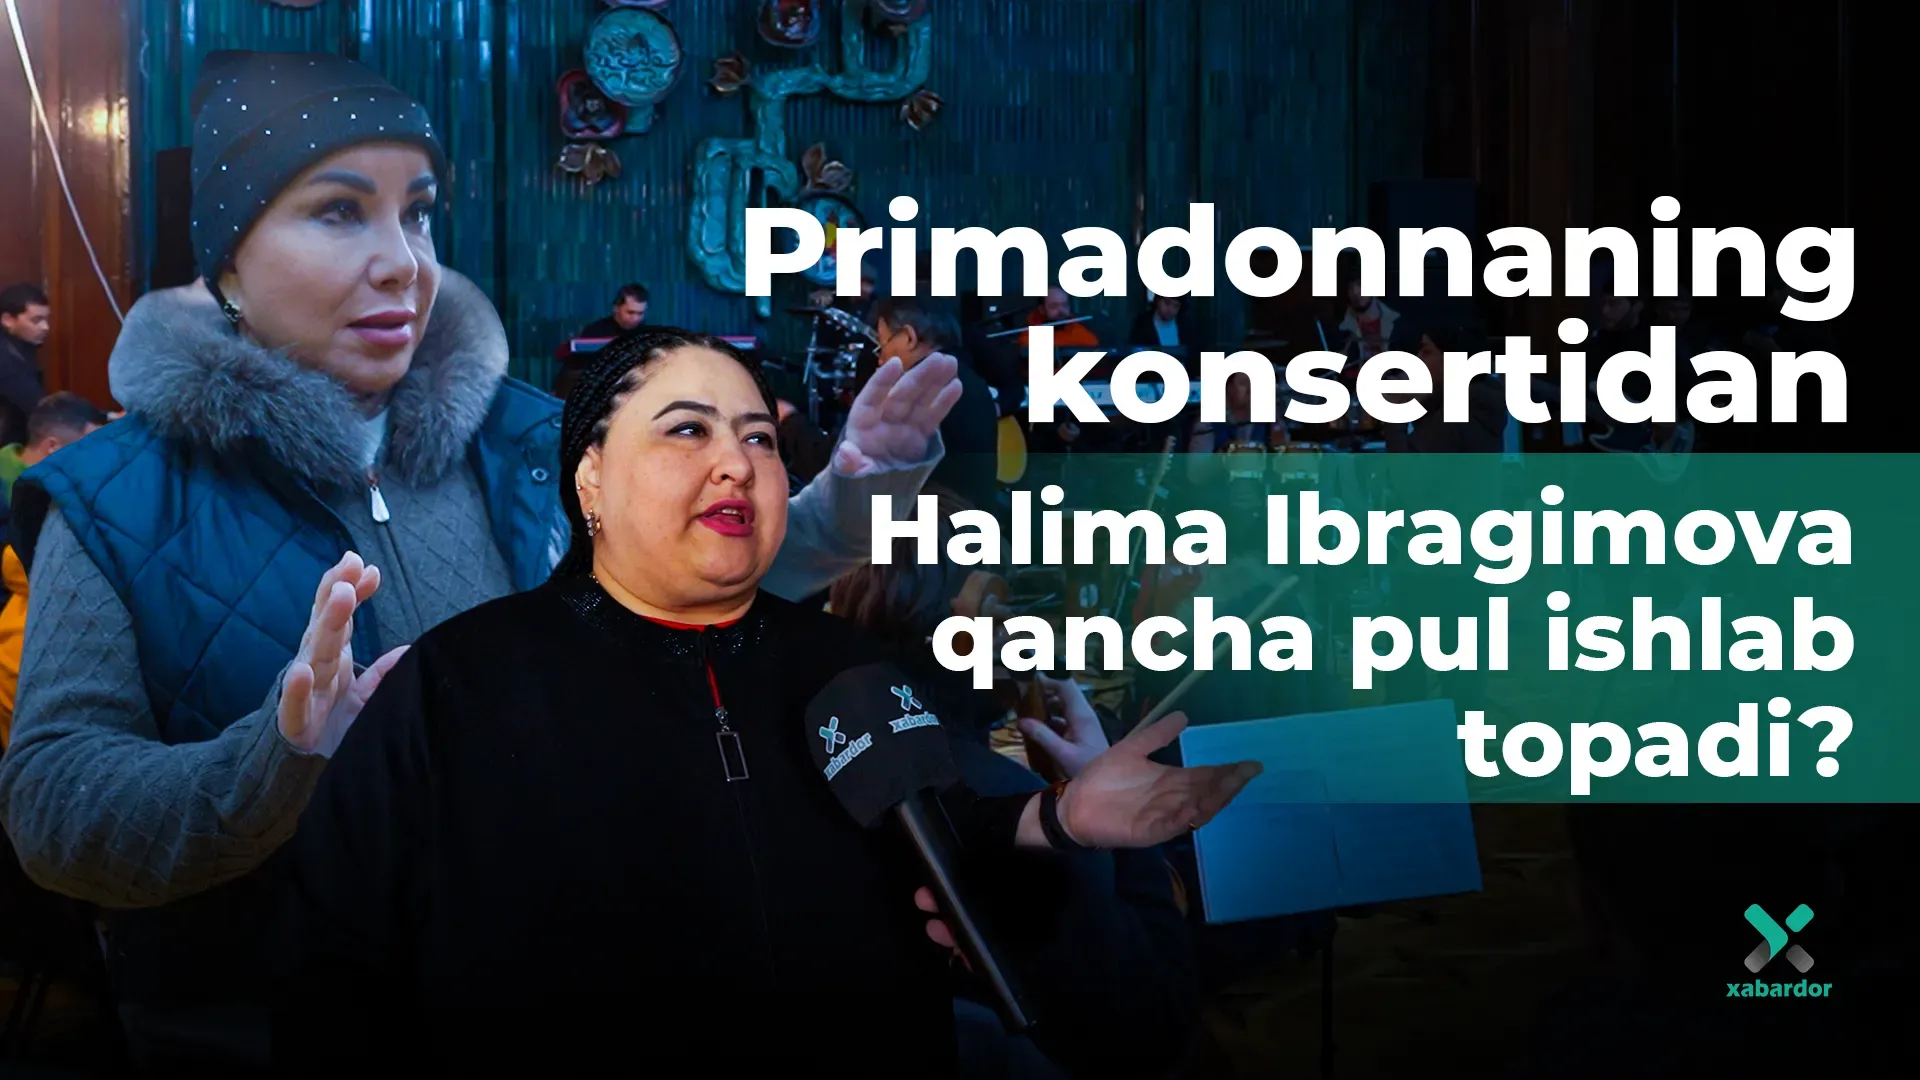 Primadonnaning konsertidan Halima Ibragimova qancha pul ishlab topadi?